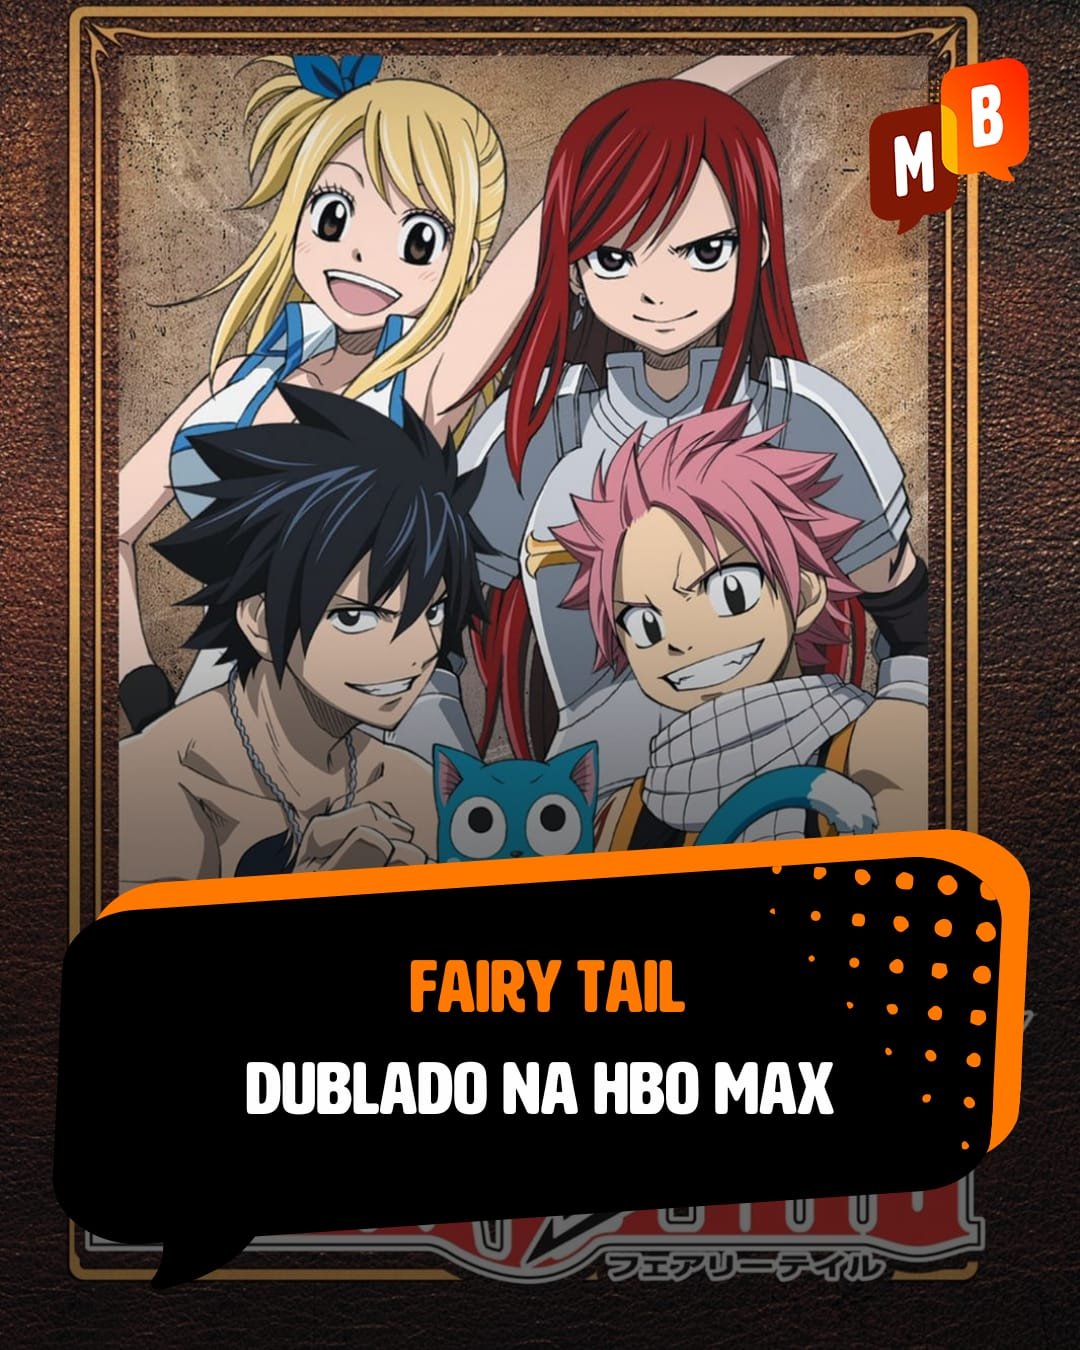 Dublagem brasileira de Fairy Tail ganha data de estreia no HBO Max